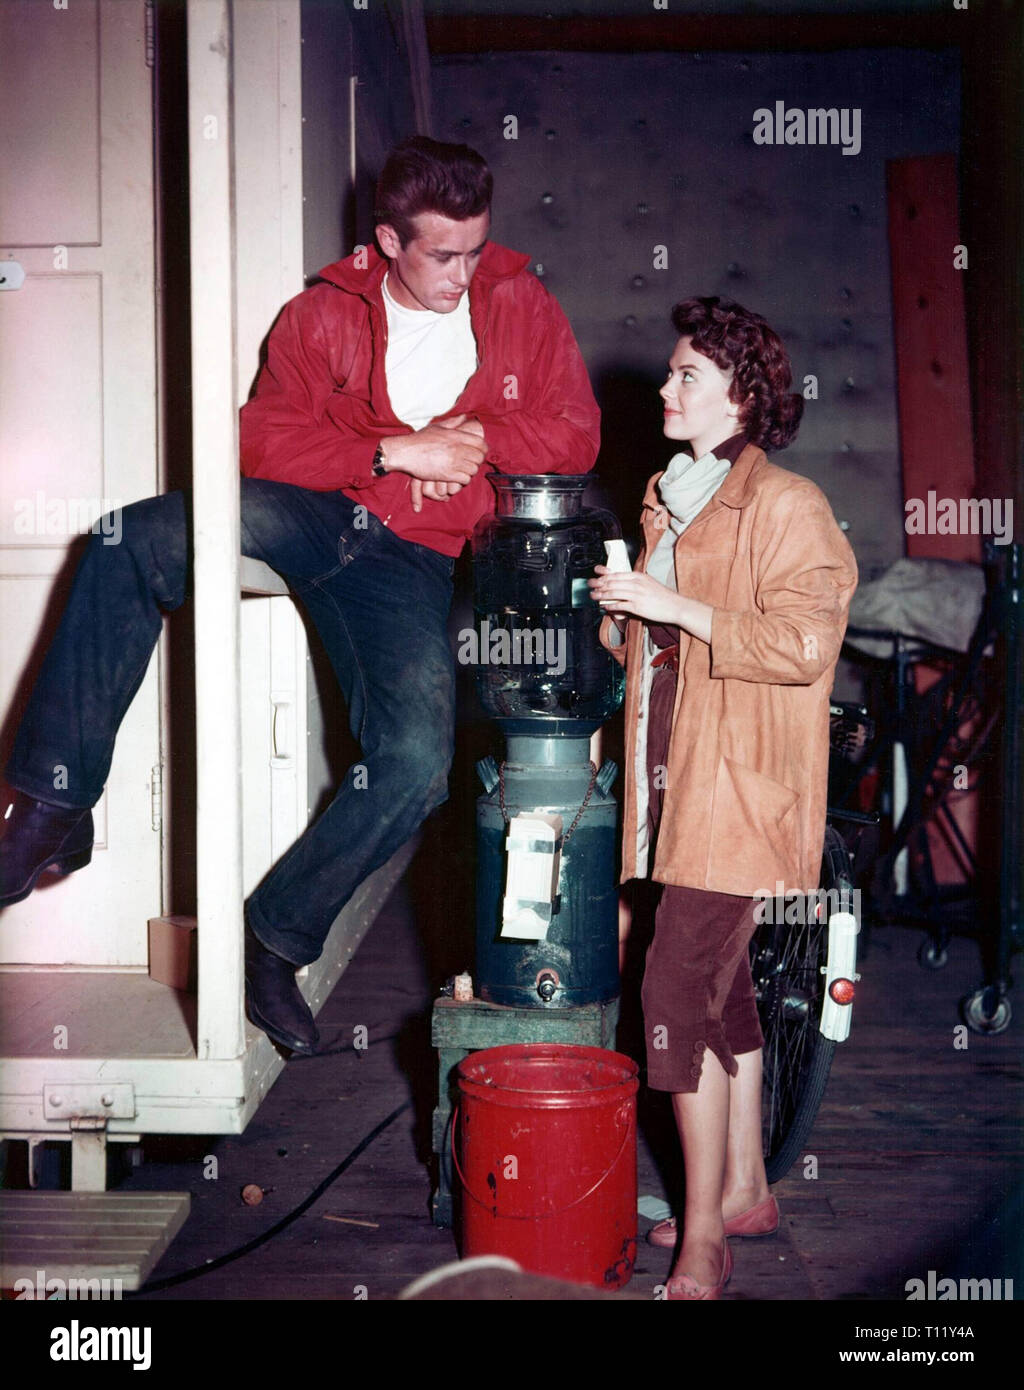 James Byron Dean (8 février 1931 - 30 septembre 1955) était un acteur américain. Il est considéré comme une icône culturelle d'adolescentes de la désillusion et de la distanciation sociale, telle qu'exprimée dans le titre de son plus célèbre film, Rebel without a Cause (1955), dans lequel il joue le rôle de Jim Stark adolescent troublé. Les deux autres rôles qui défini son vedettariat ont été solitaire Cal Trask dans l'est d'Eden (1955) et rébarbatifs ranch Jett Rink dans Giant (1956). Hollywood : Crédit Photo Archive / MediaPunch Banque D'Images